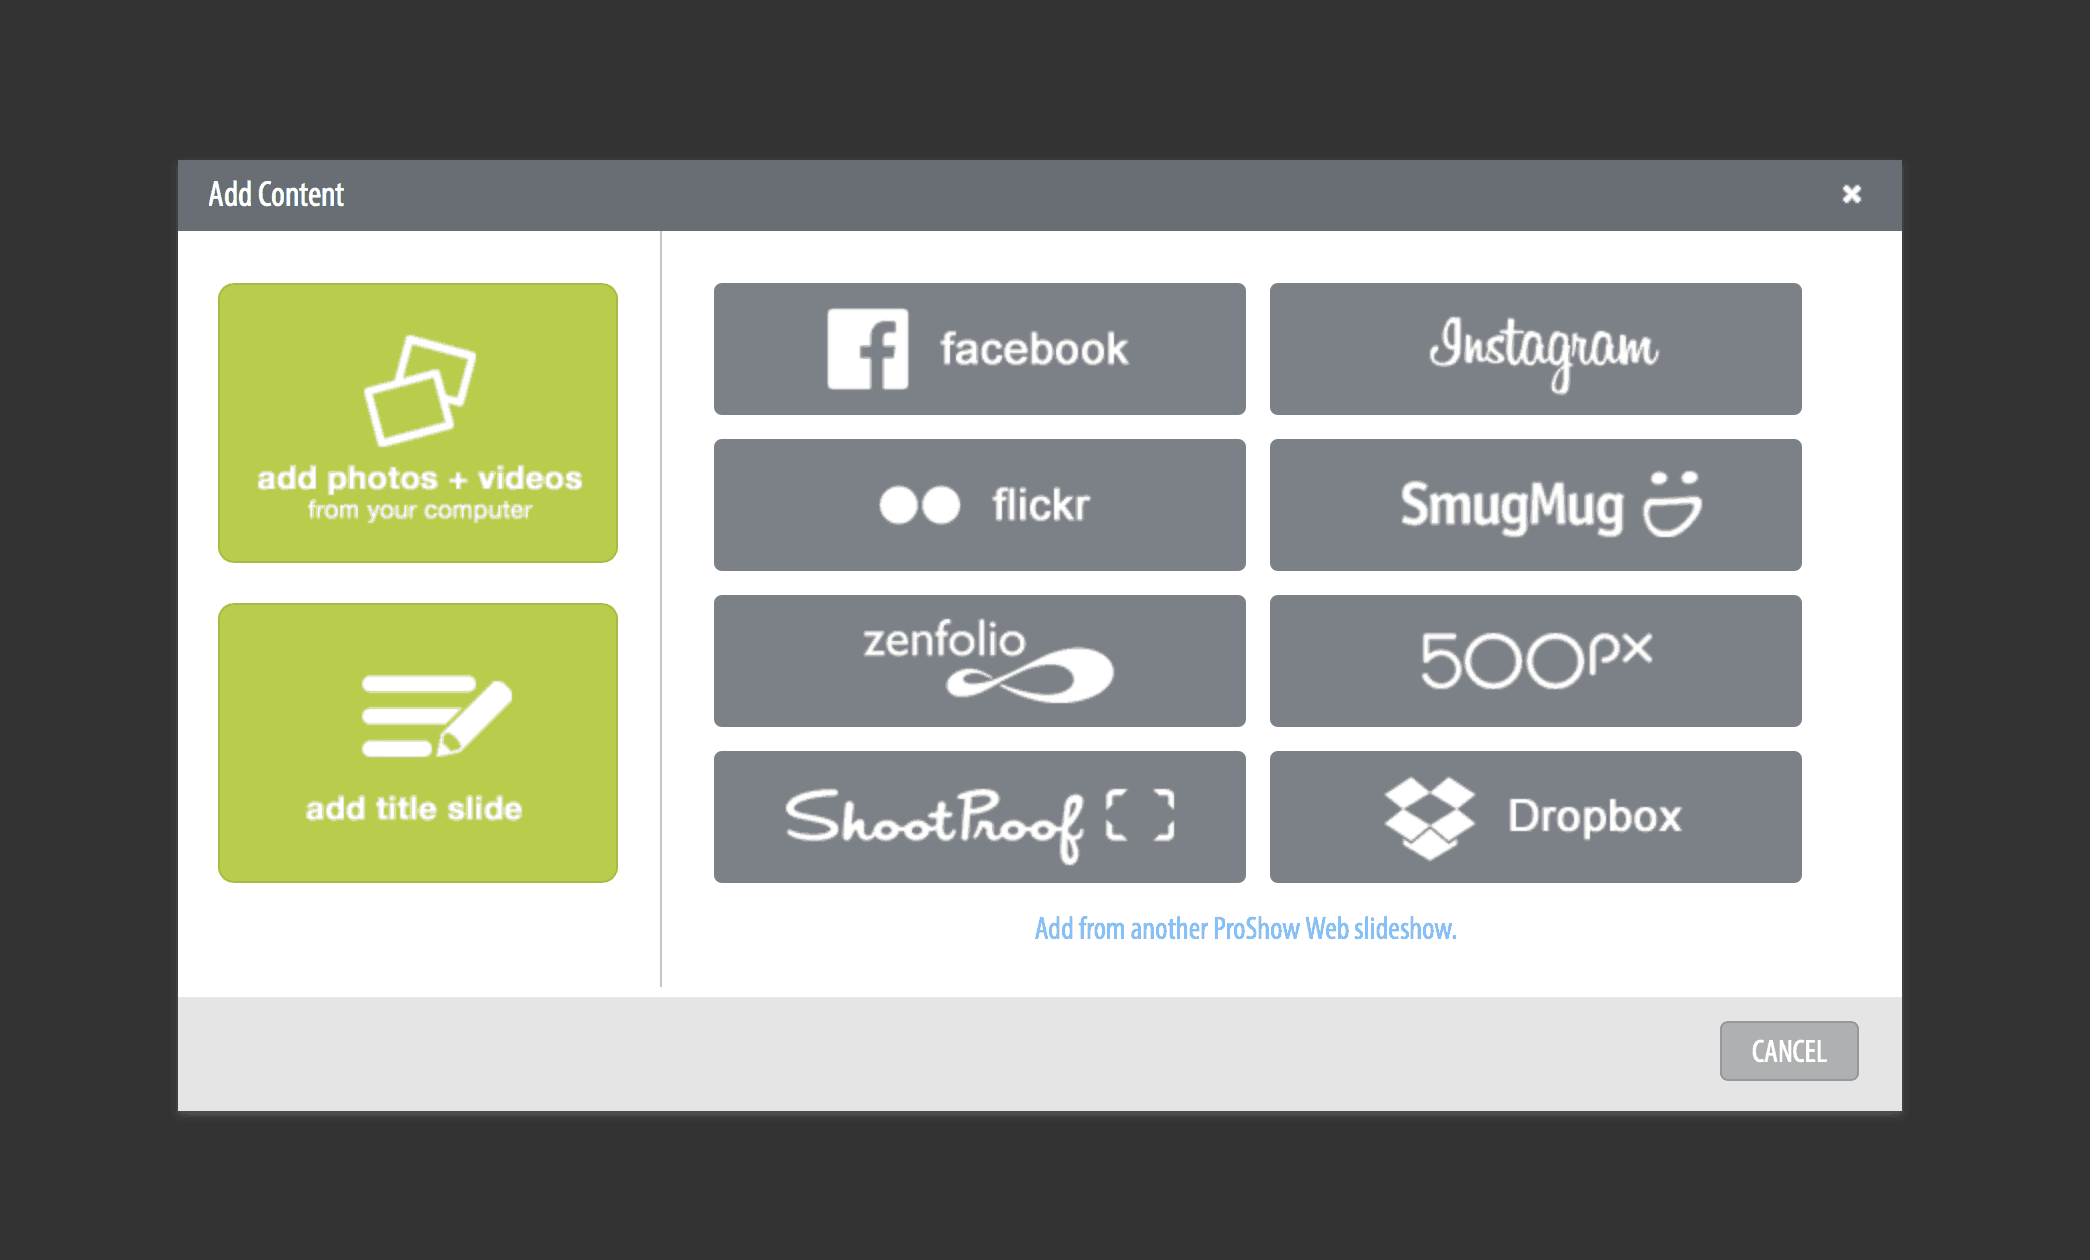 Comment créer un diaporama Photo et Vidéo Comme un Pro avec ProShow Web| OrganizingPhotos.net instagram Facebook, Flickr, Zenfolio et Dropbox vous permettent d'ajouter du contenu provenant de diverses sources.